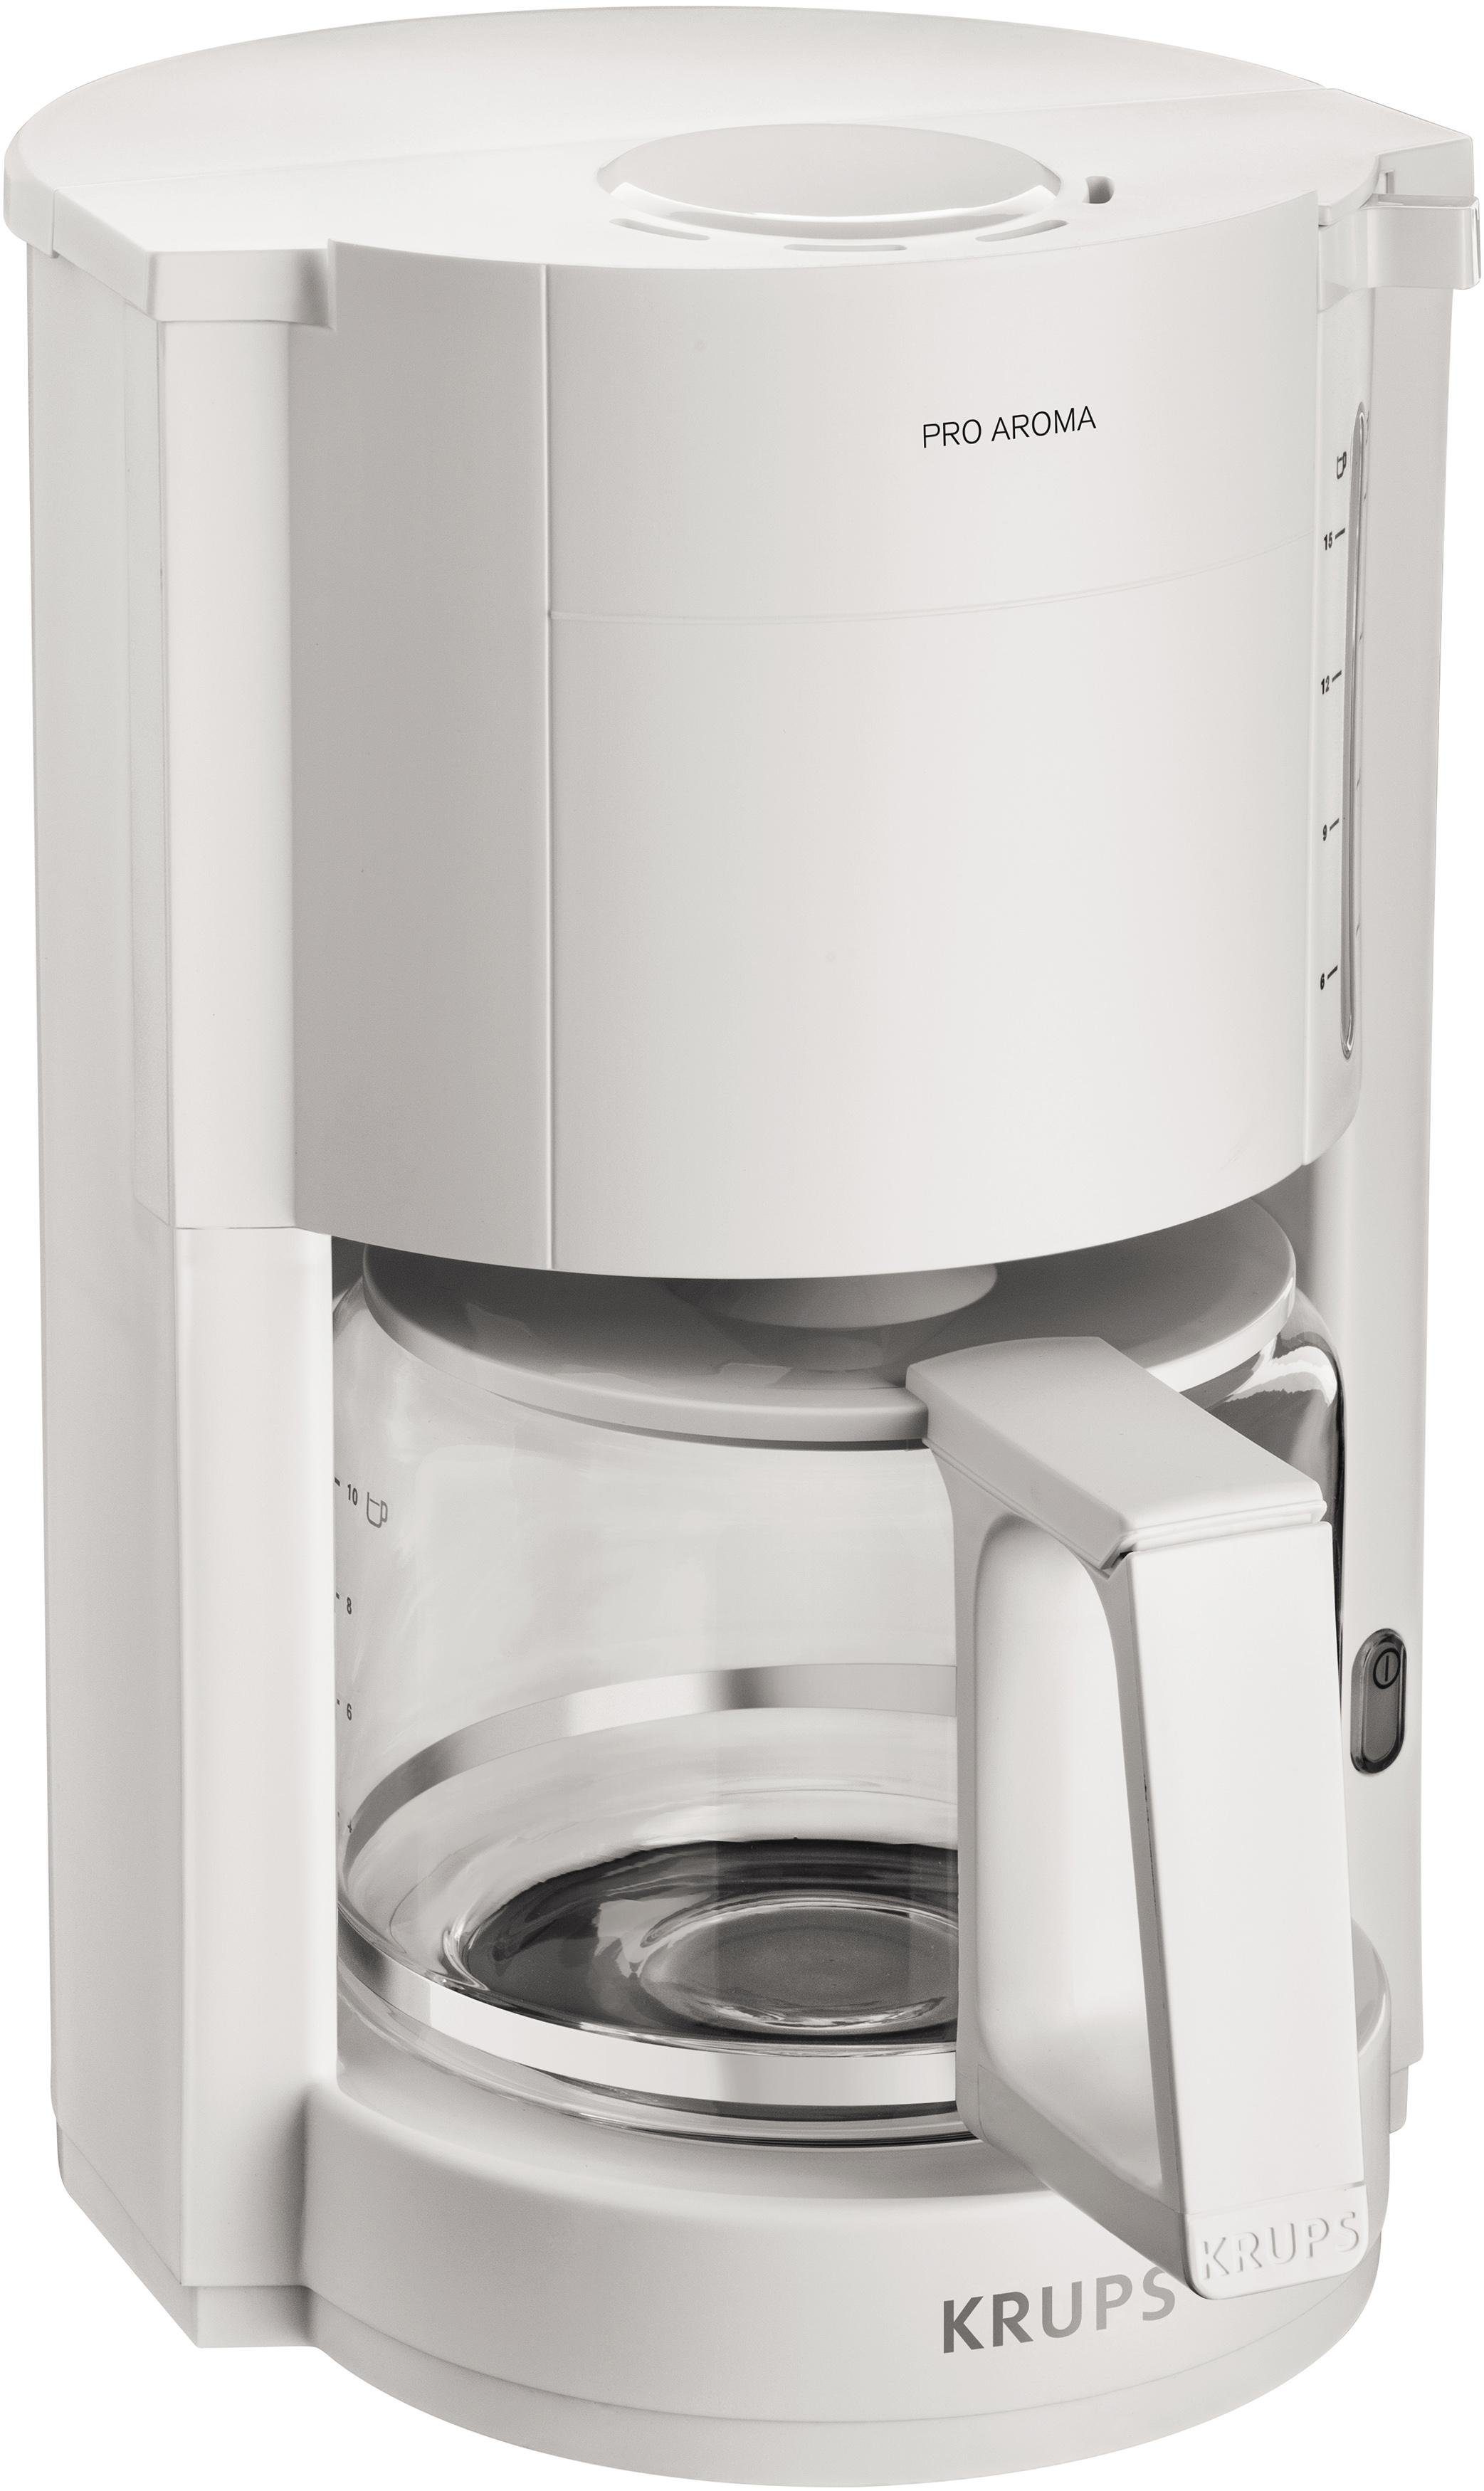 Krups Filterkaffeemaschine F30901 Pro Aroma, Warmhaltefunktion,  Automatische Abschaltung, 1050 W online kaufen | OTTO